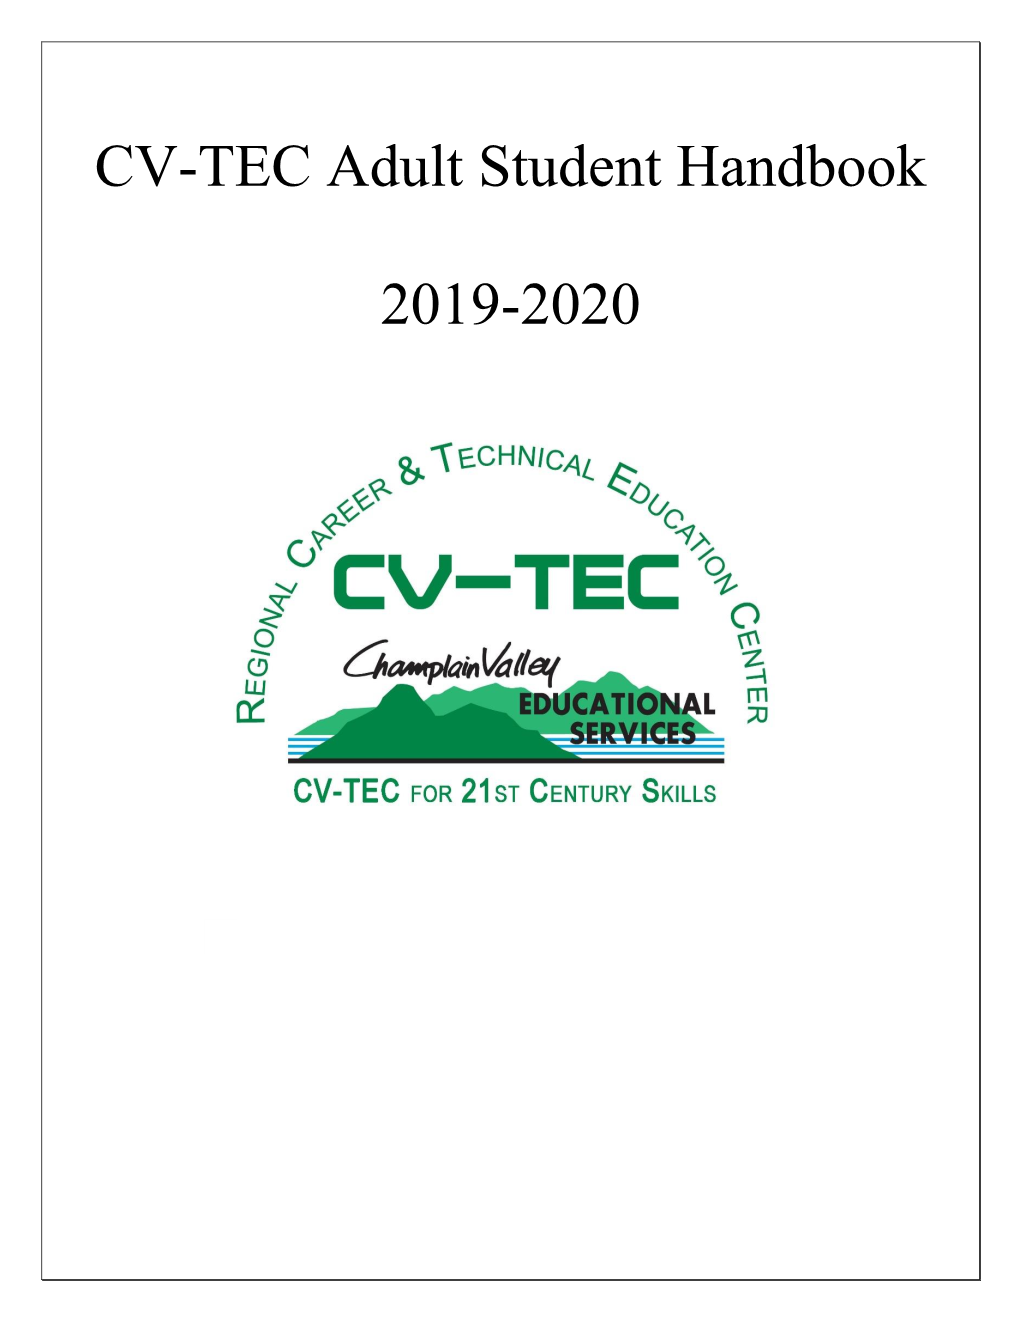 CV-TEC Adult Student Handbook 2019-2020 At